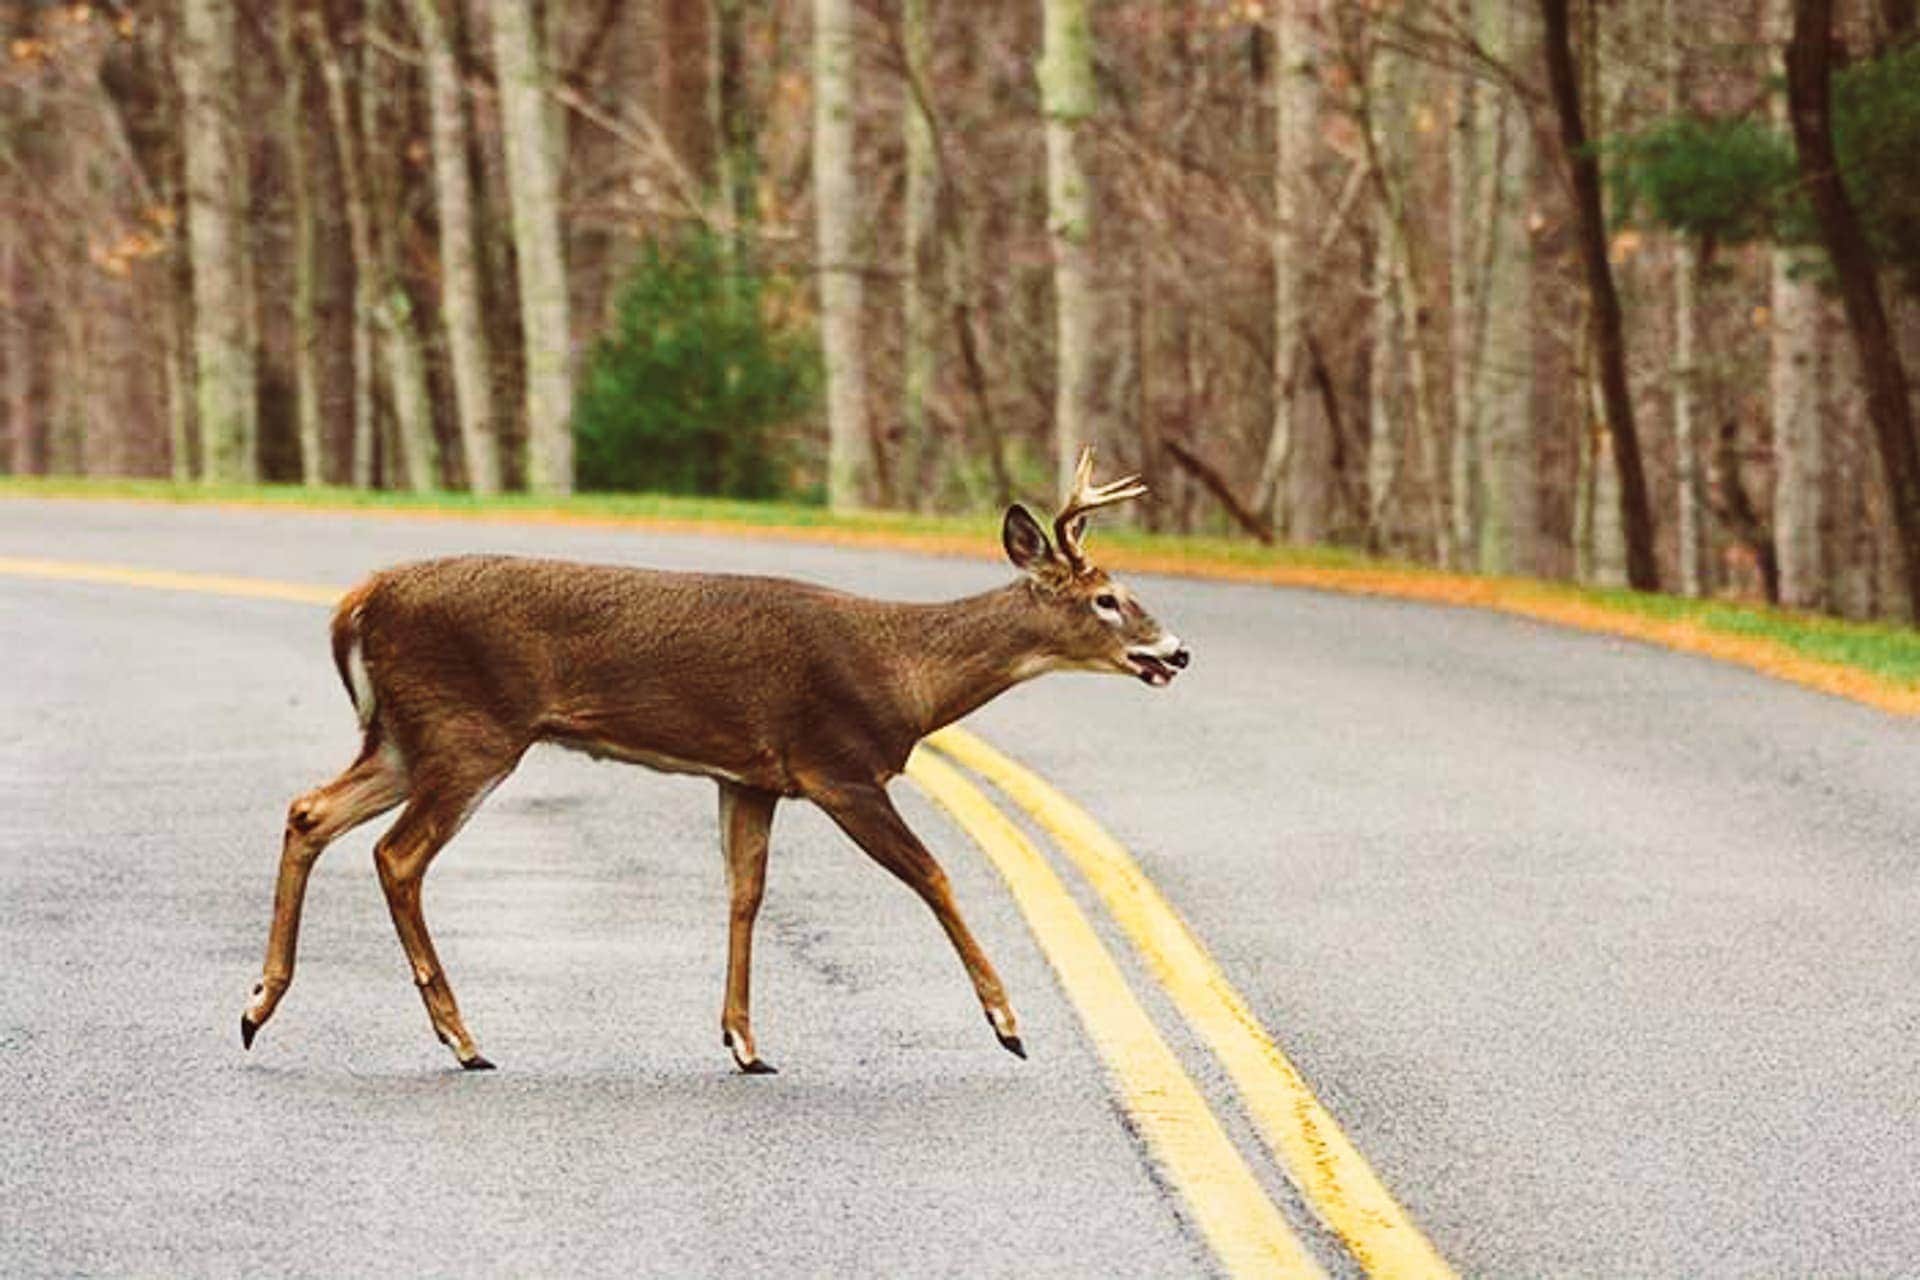 Deer on road